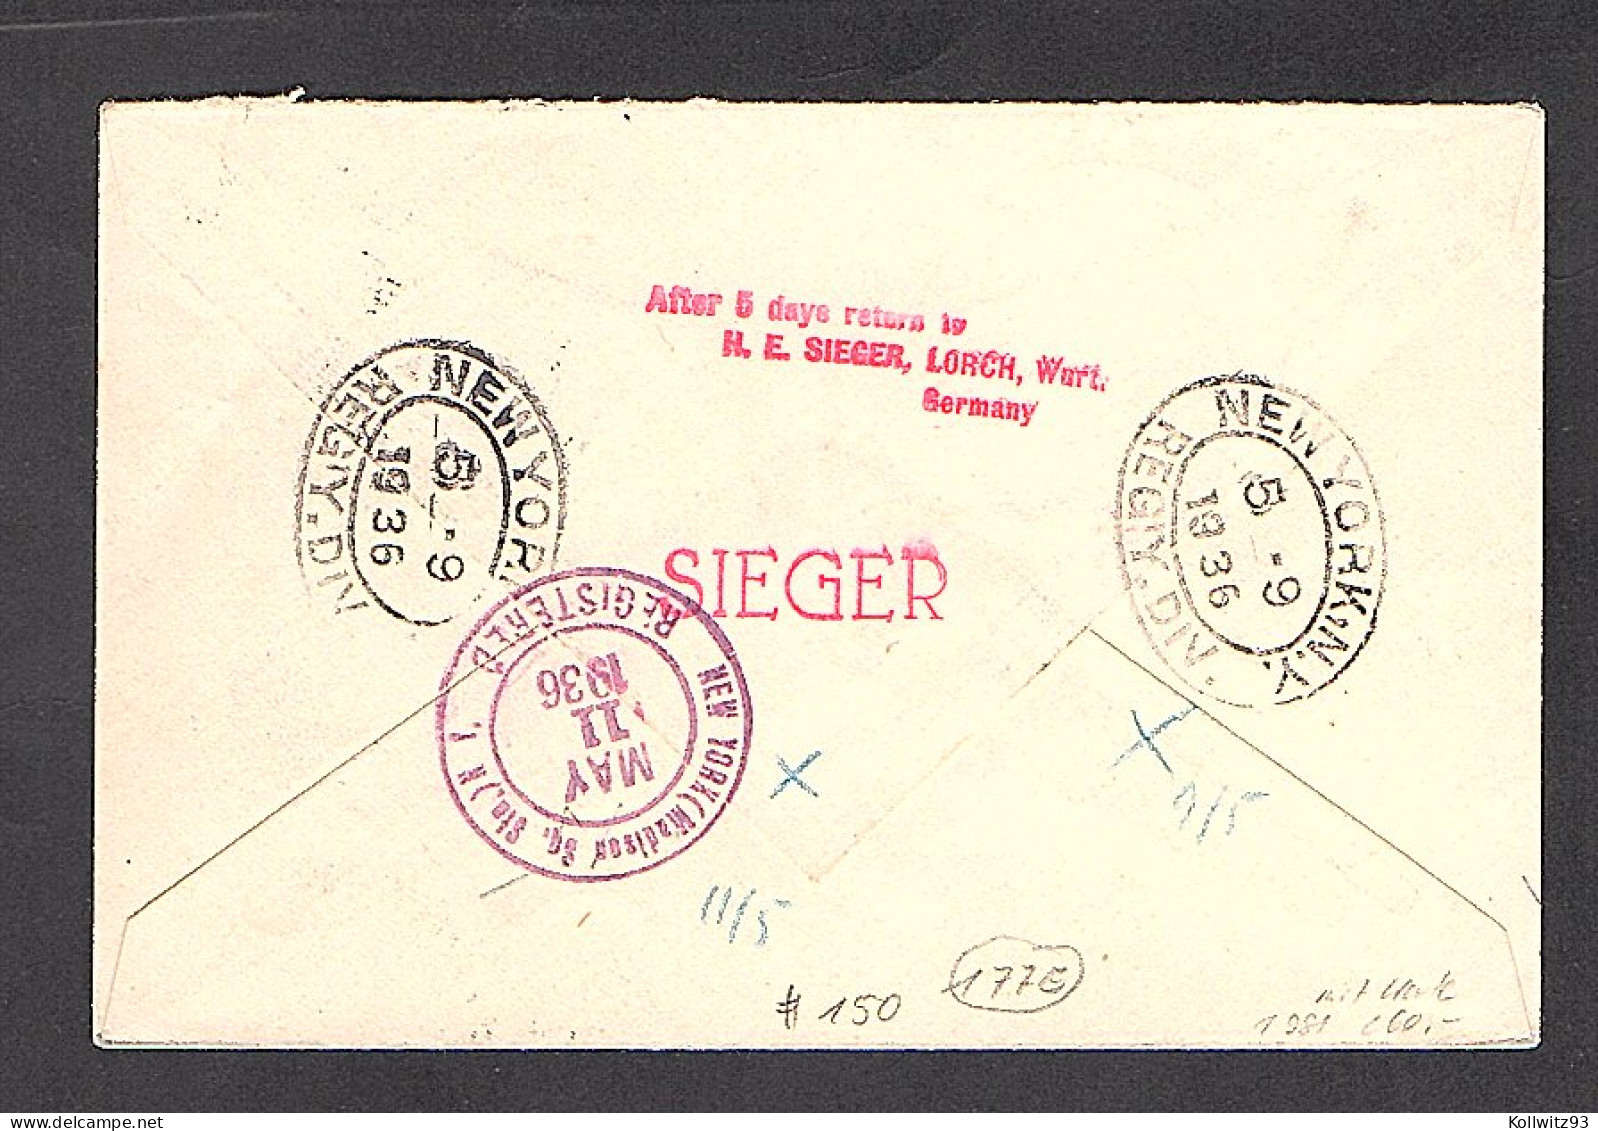 Liechtenstein Zeppelin Brief/Karte LZ 129, 1.Nordamerikafahrt 1936, Si 408AB - Zeppelin